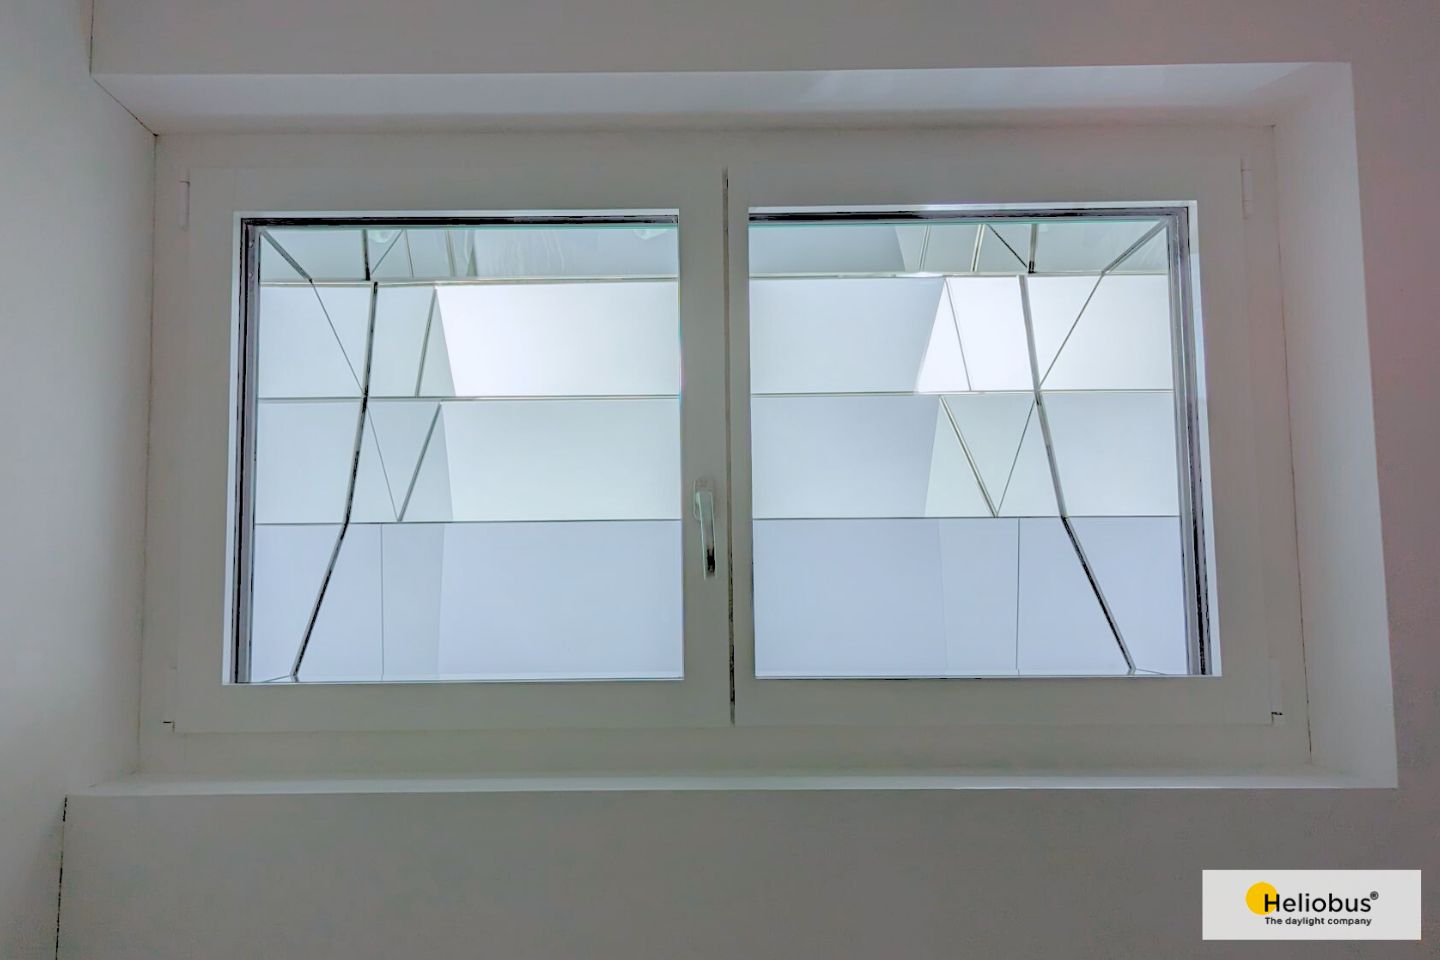 Fenster im Untergeschoss mit Spiegelgeometrie für Tageslicht und Ausblick